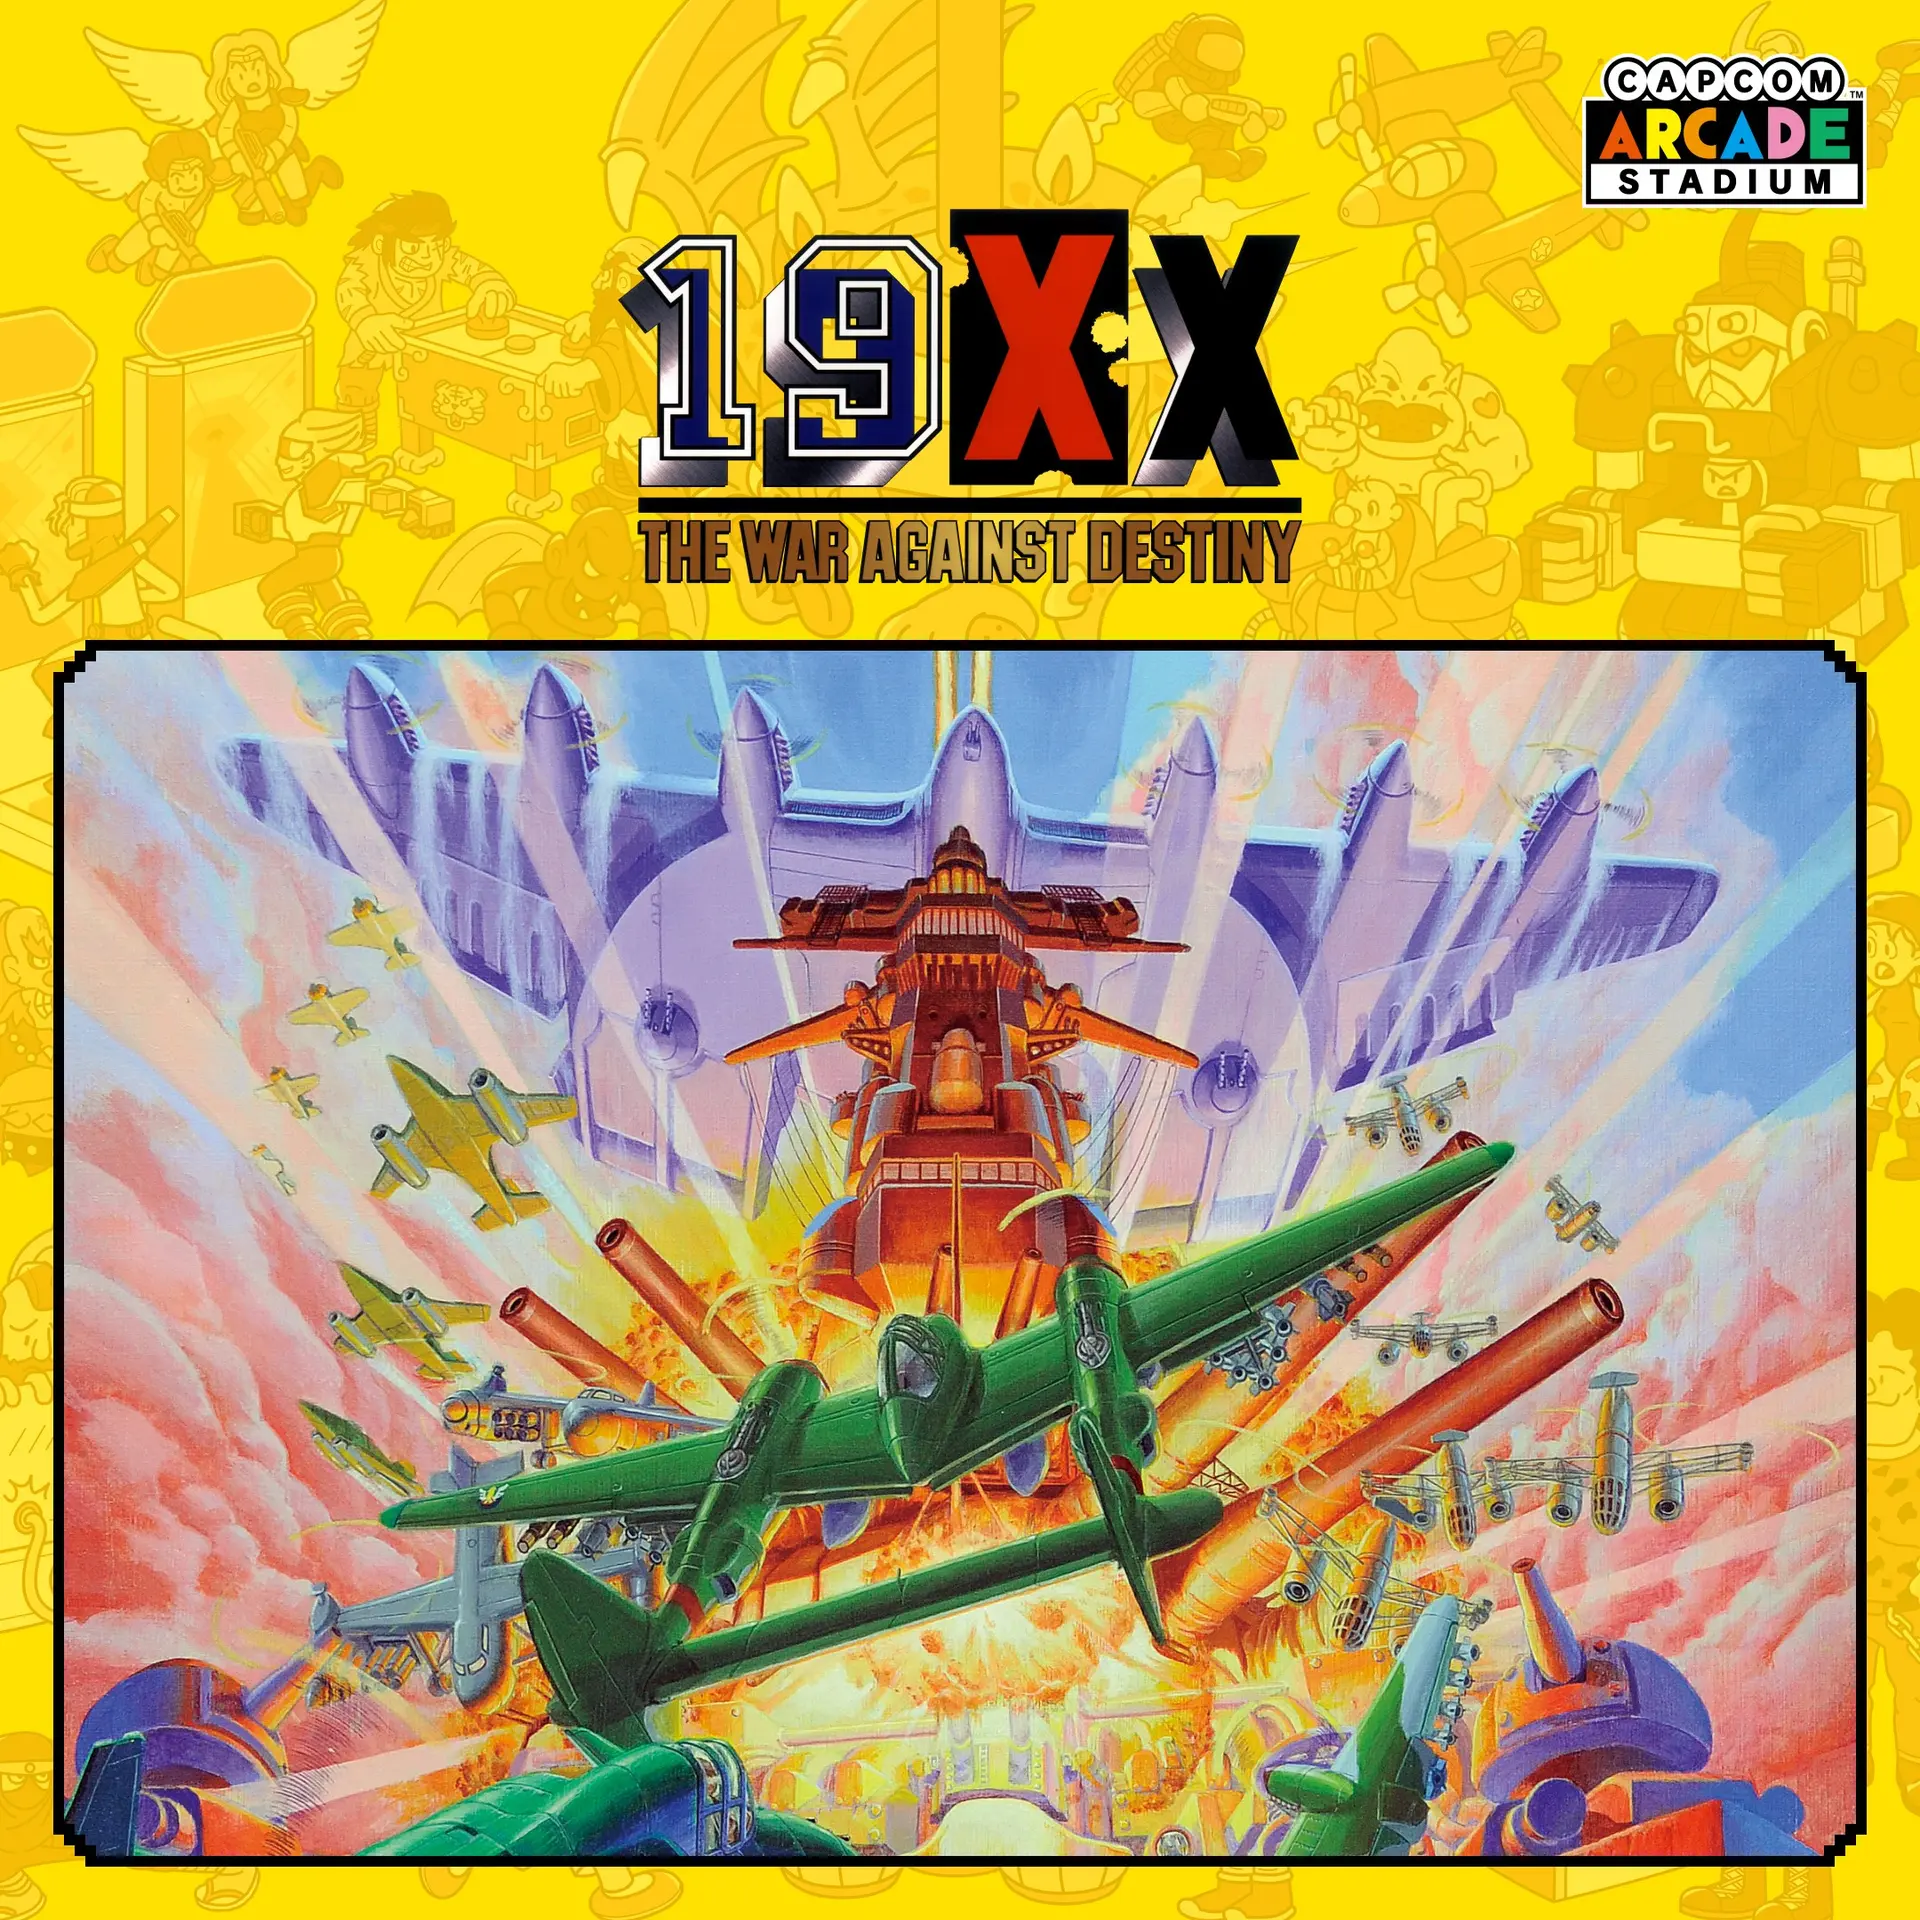 Capcom Arcade Stadium：19XX - The War Against Destiny - (Xbox Games TR)